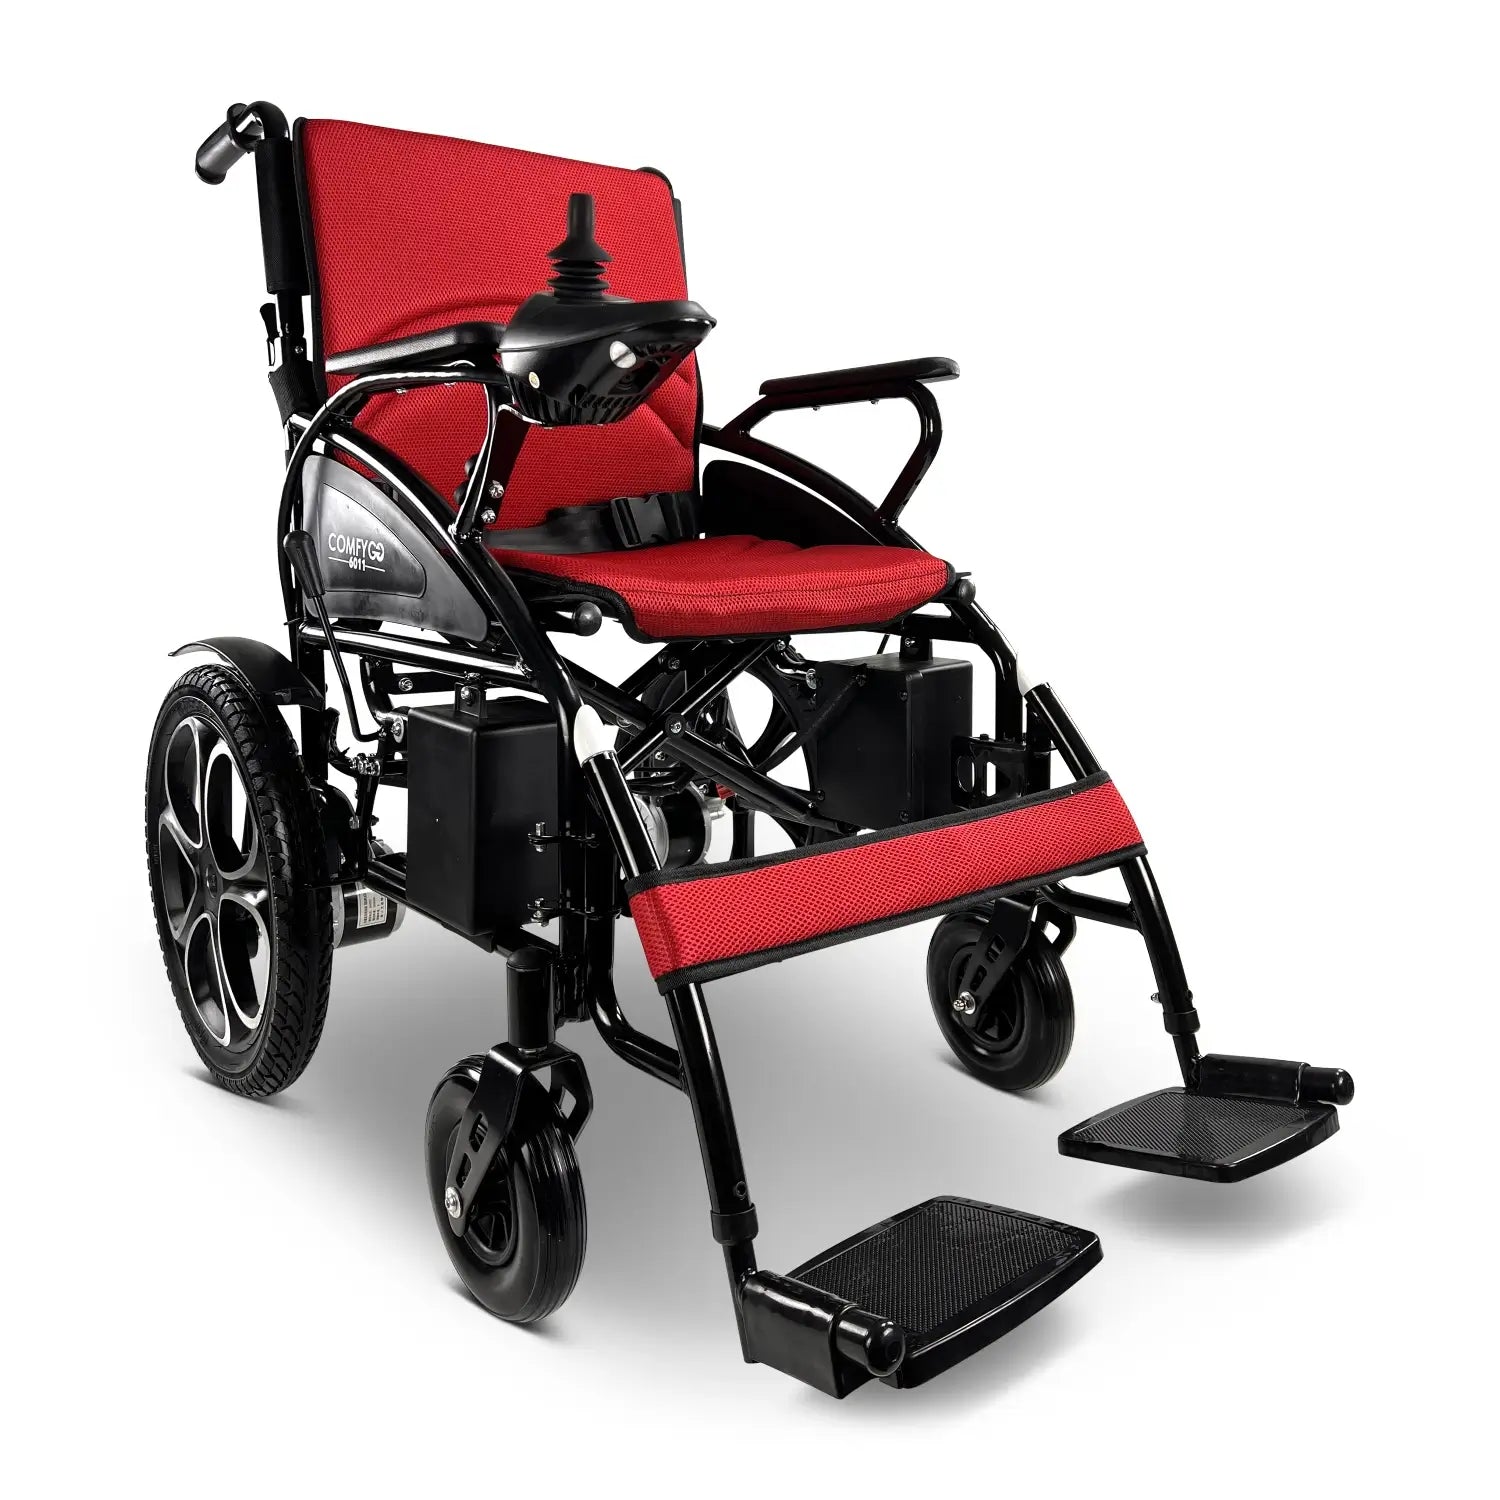 Tan ComfyGO 6011 Electric Wheelchair